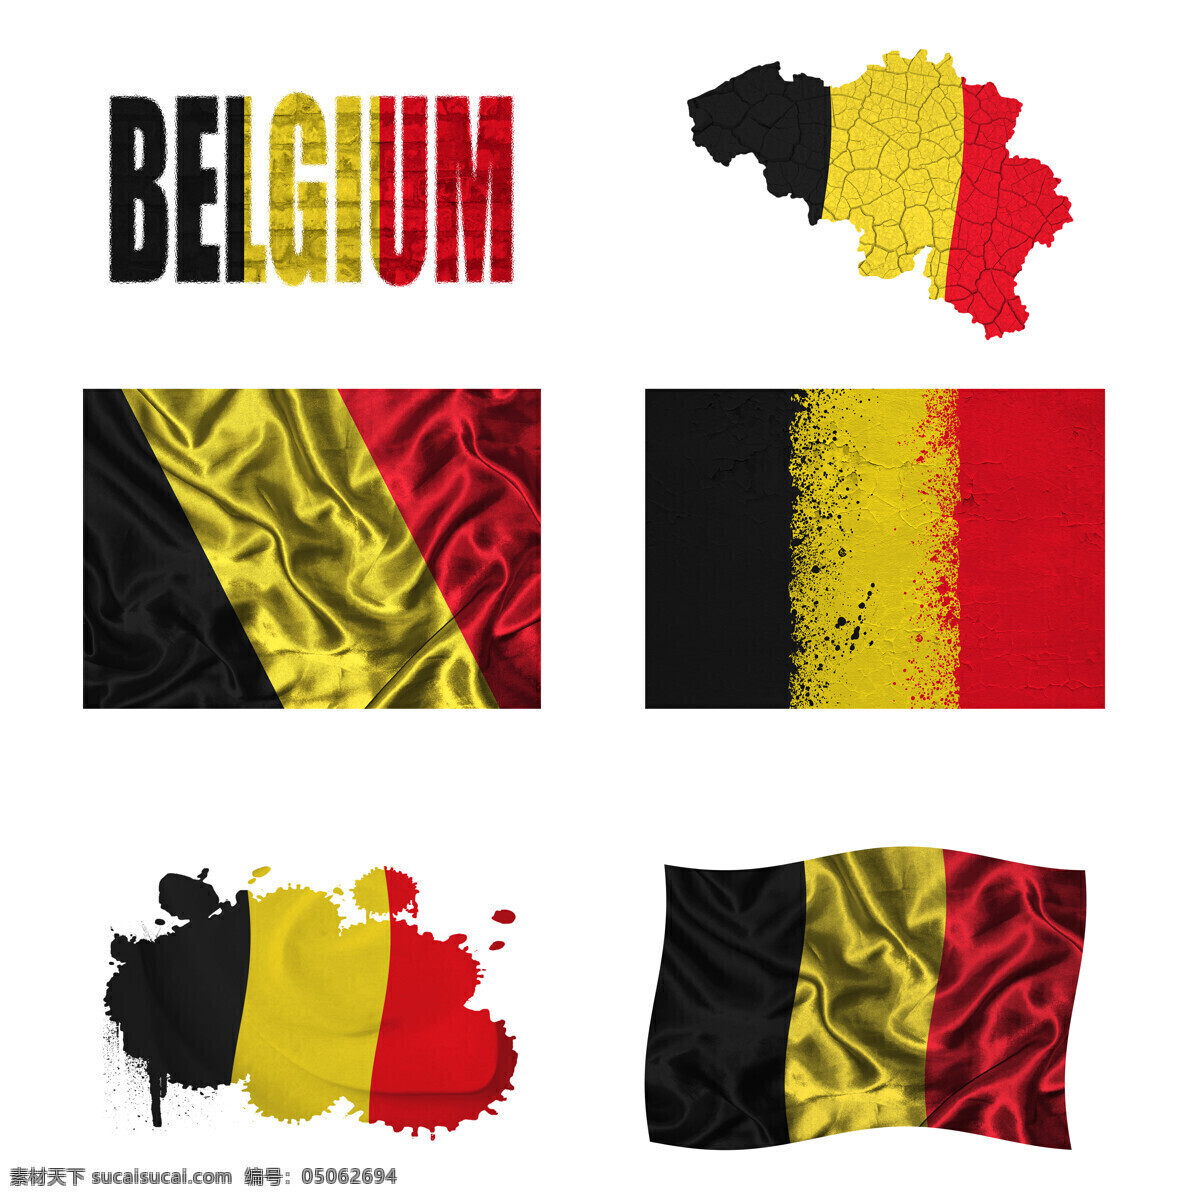 比利时 地图 国旗 比利时国旗 旗帜 国旗图案 其他类别 地图图片 生活百科